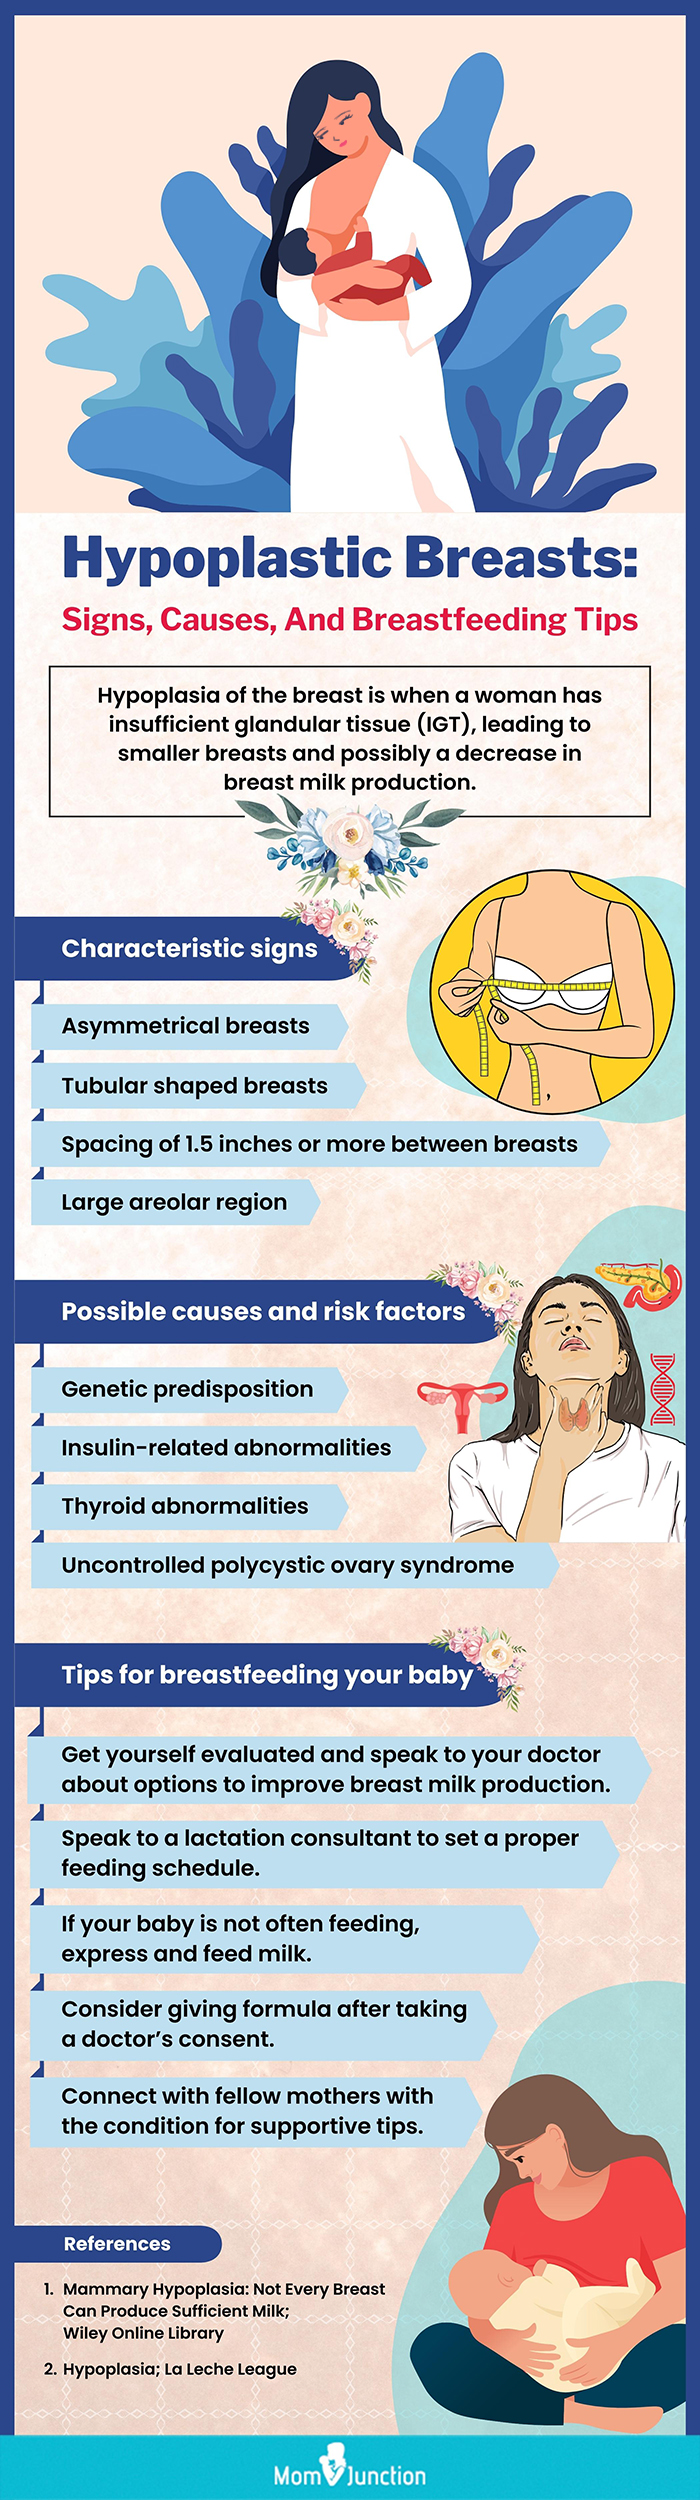 乳房发育不良的迹象、原因及母乳喂养提示(信息图)